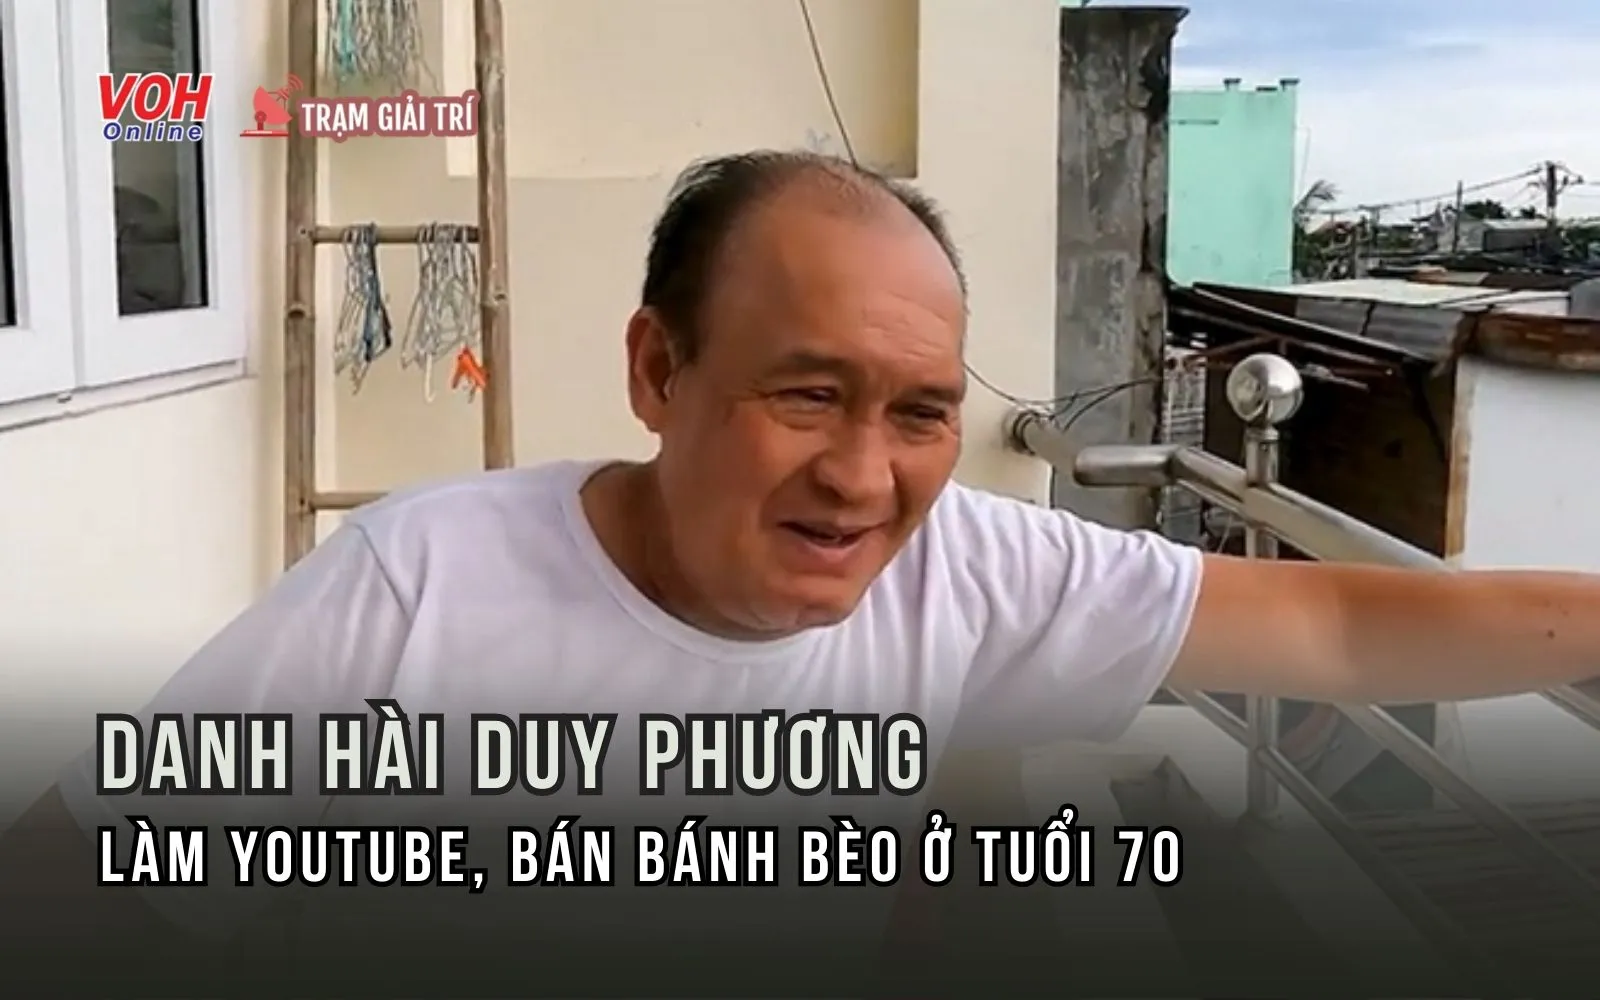 Cuộc sống tuổi 70 của danh hài Duy Phương: bán bánh bèo, làm Youtube